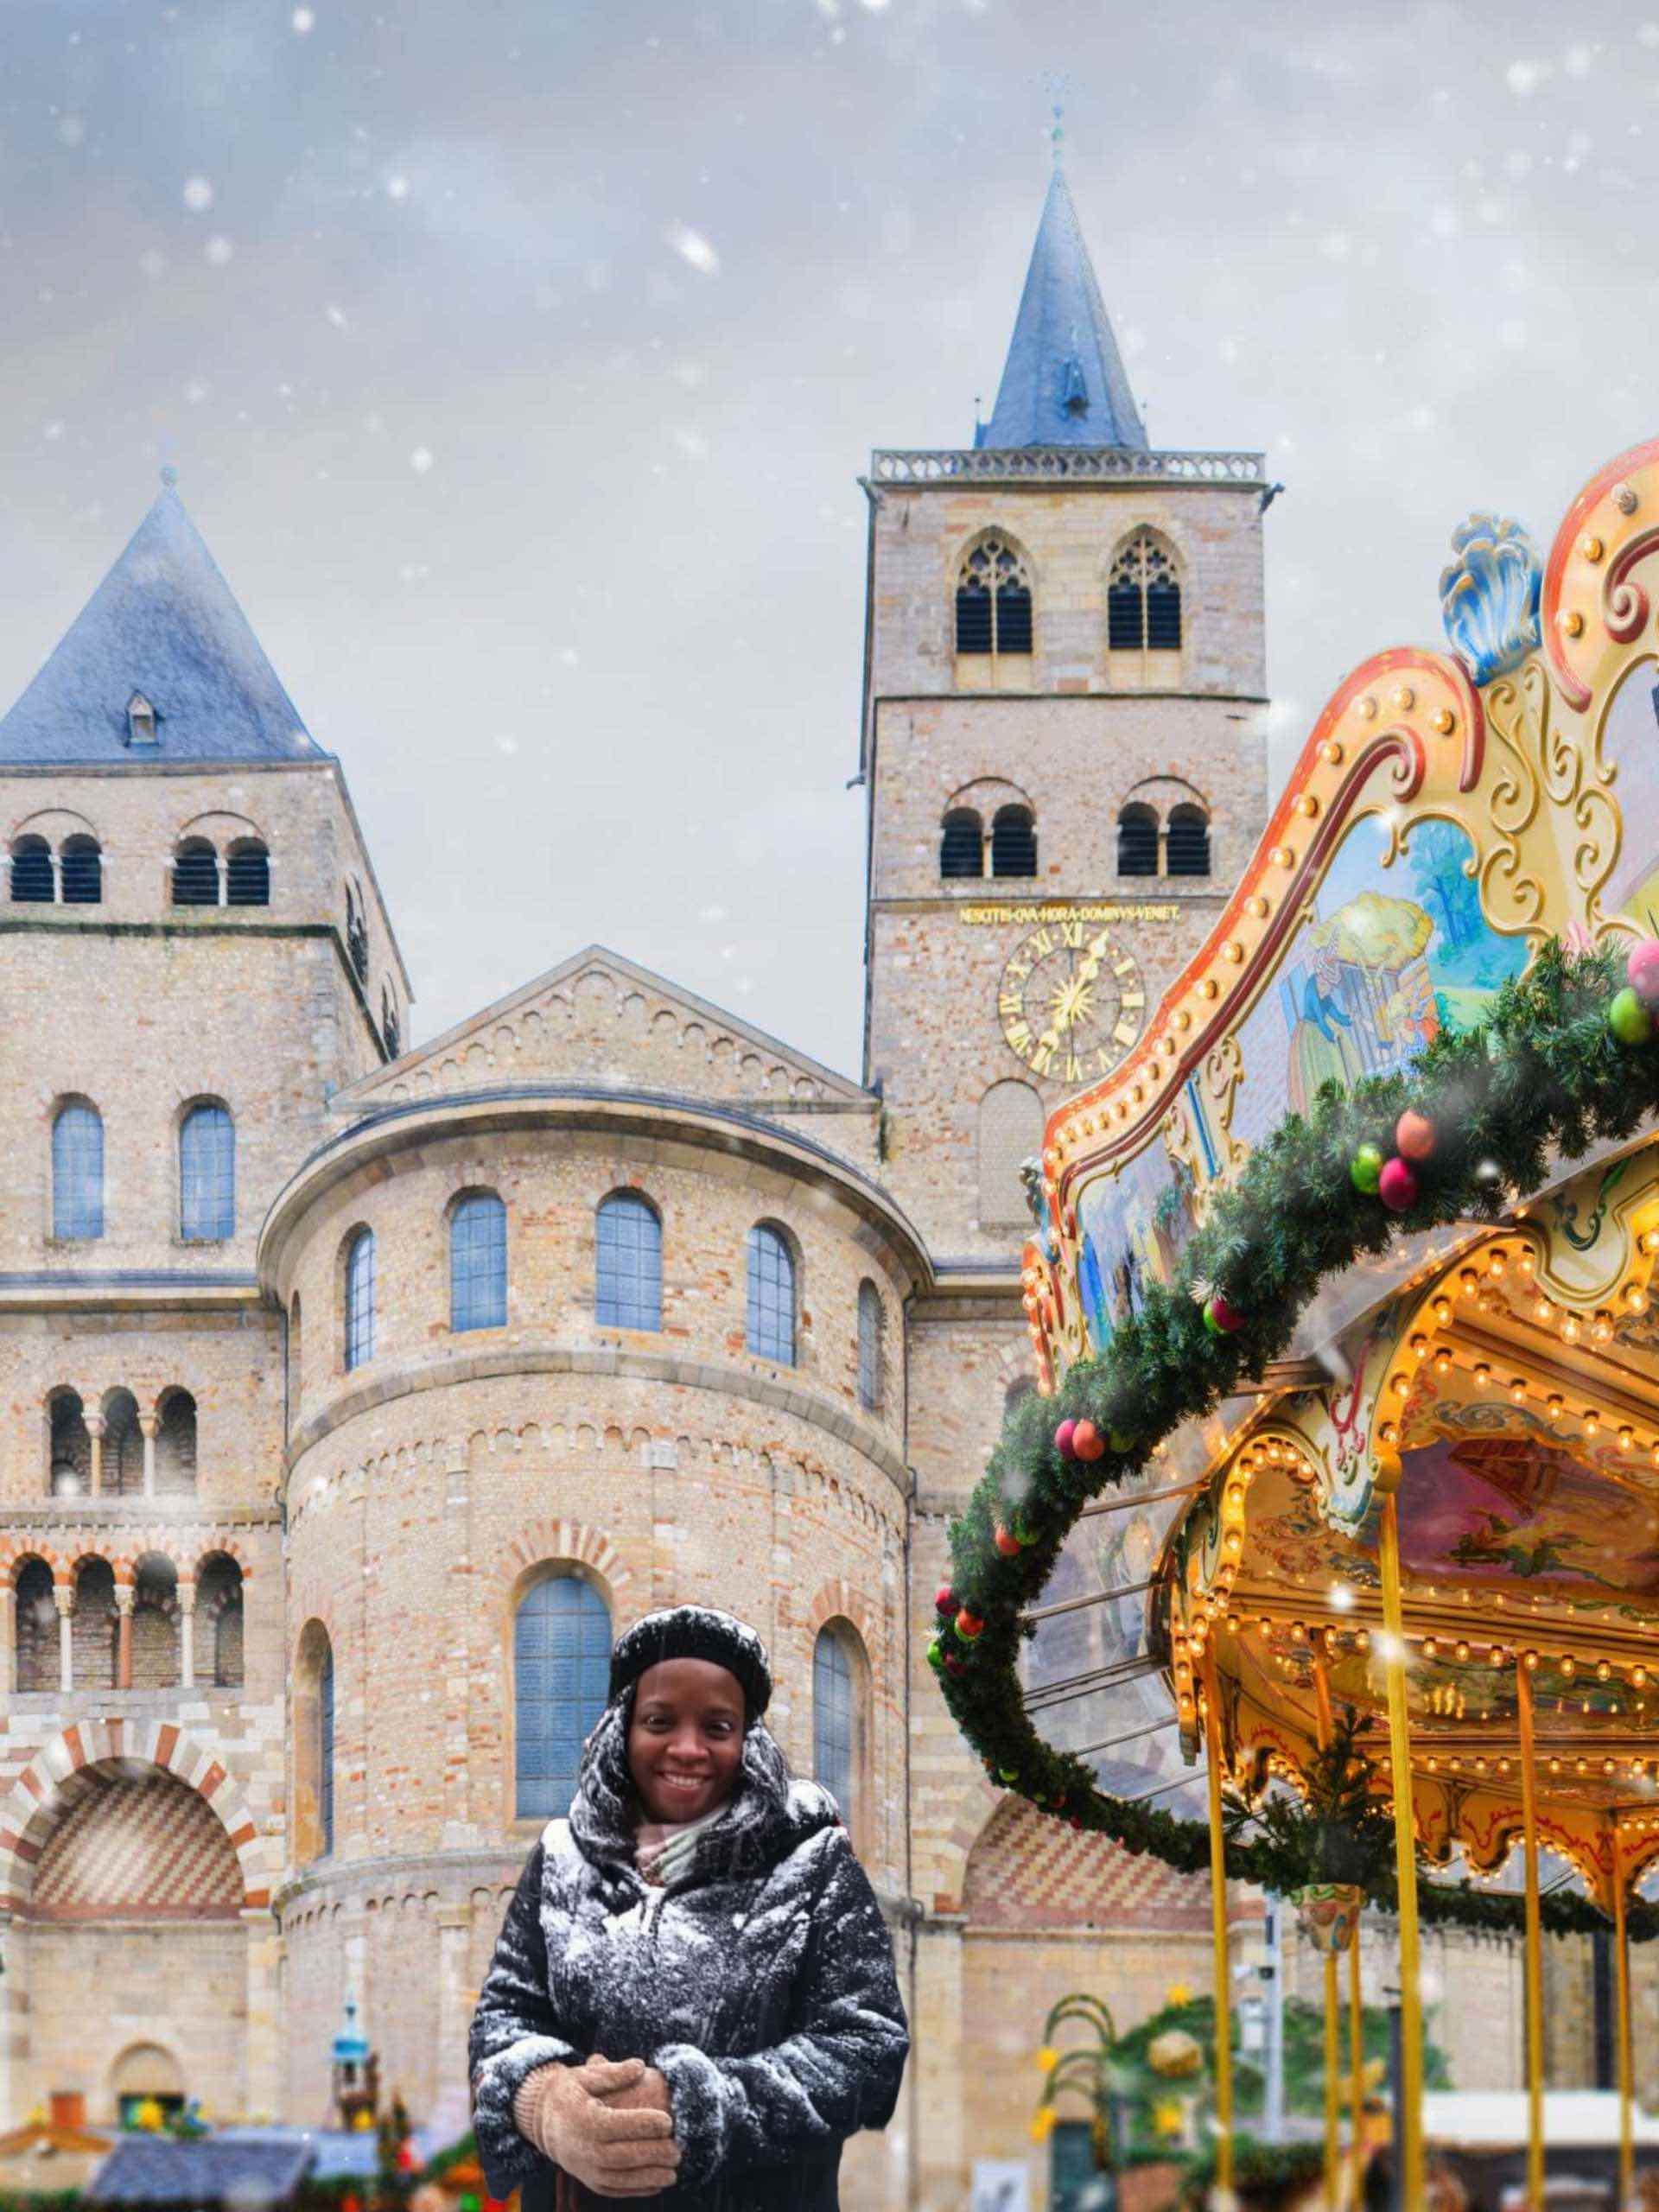 German Weihnachtsmarkts- featured image